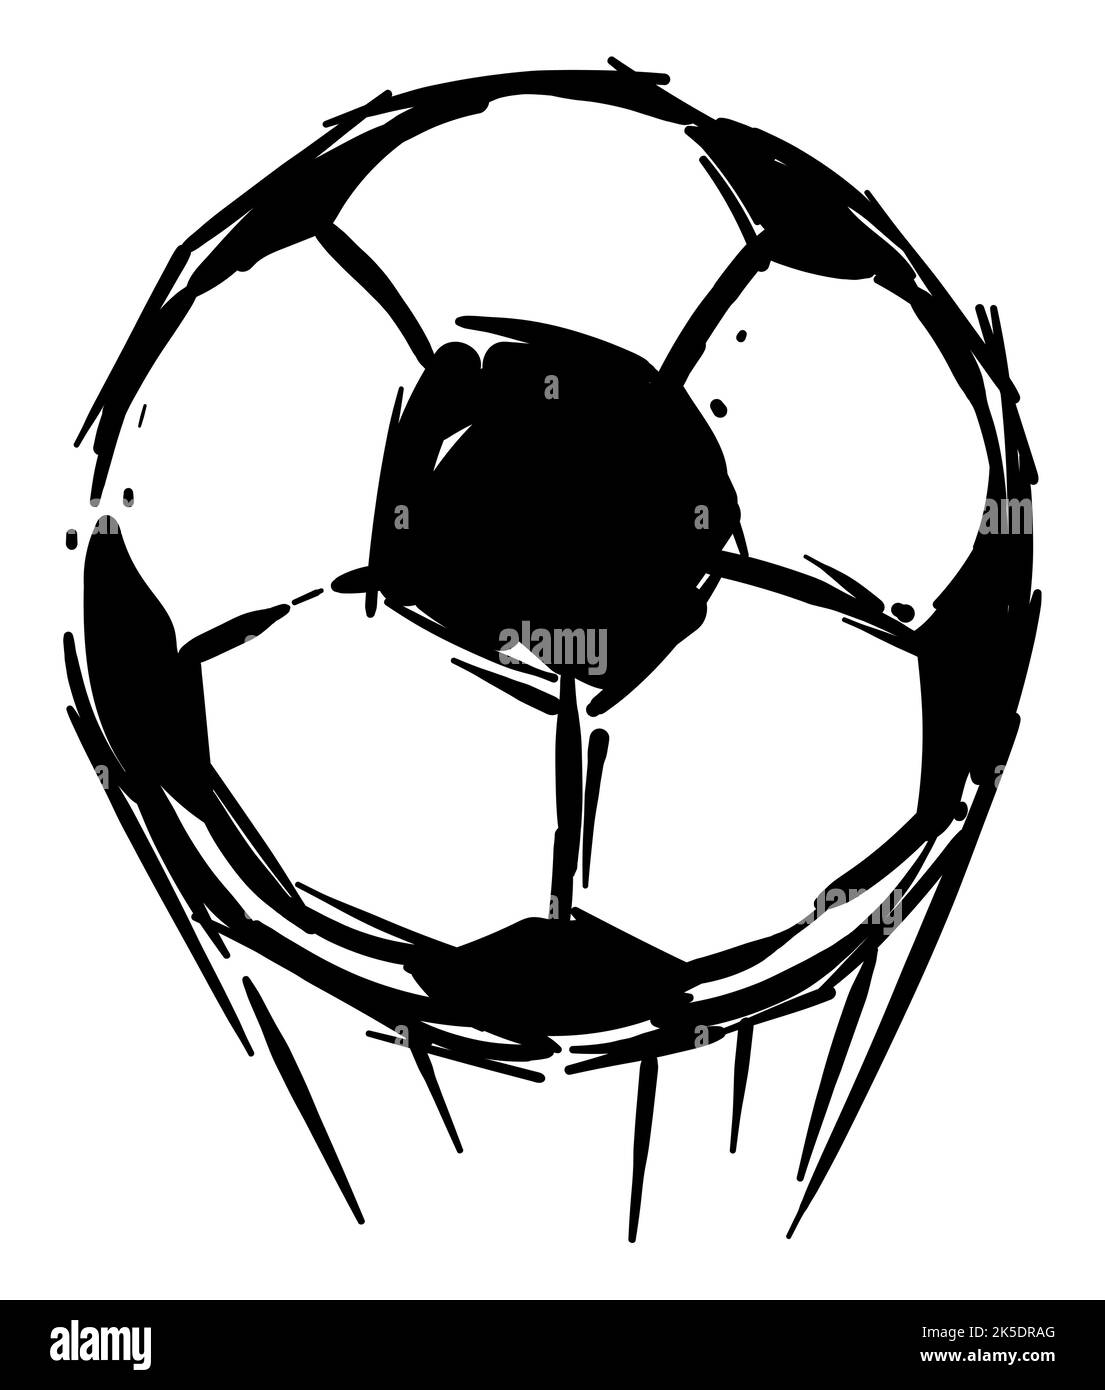 Schneller Fußball mit Geschwindigkeitslinien nach oben geworfen. Handgezeichnetes Design. Stock Vektor